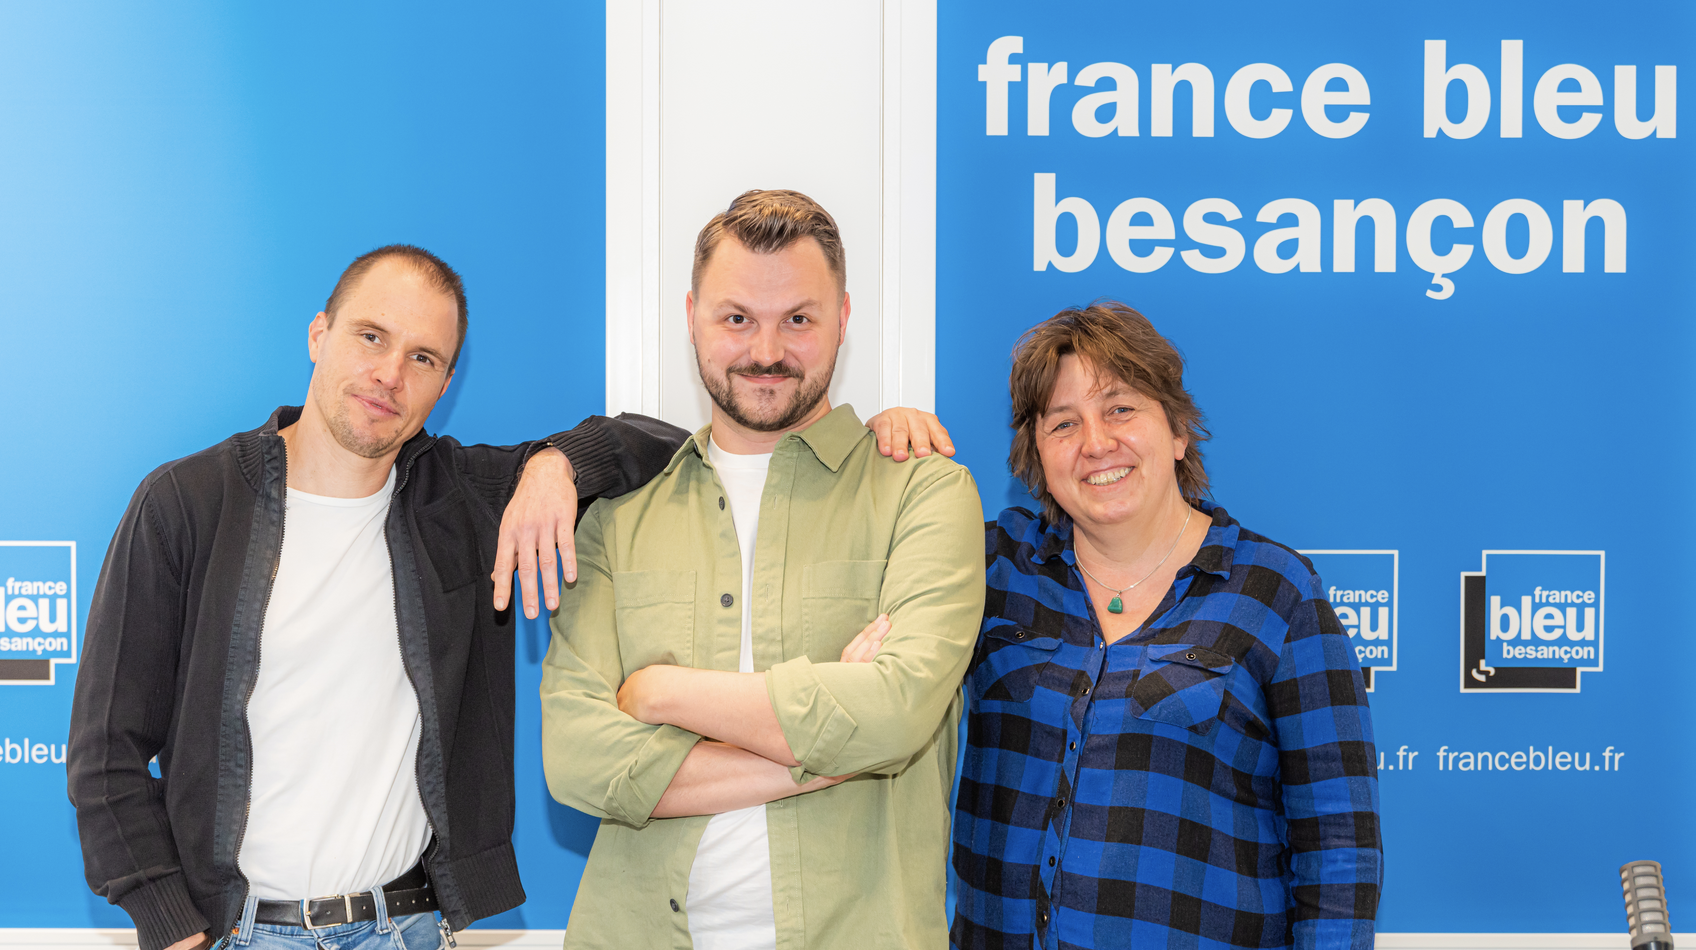 De gauche à droite : Dimitri Imbert (journaliste), Pol Laurent (animateur) et Marion Streicher (journaliste), l'équipe de la matinale de France Bleu Besançon © William B